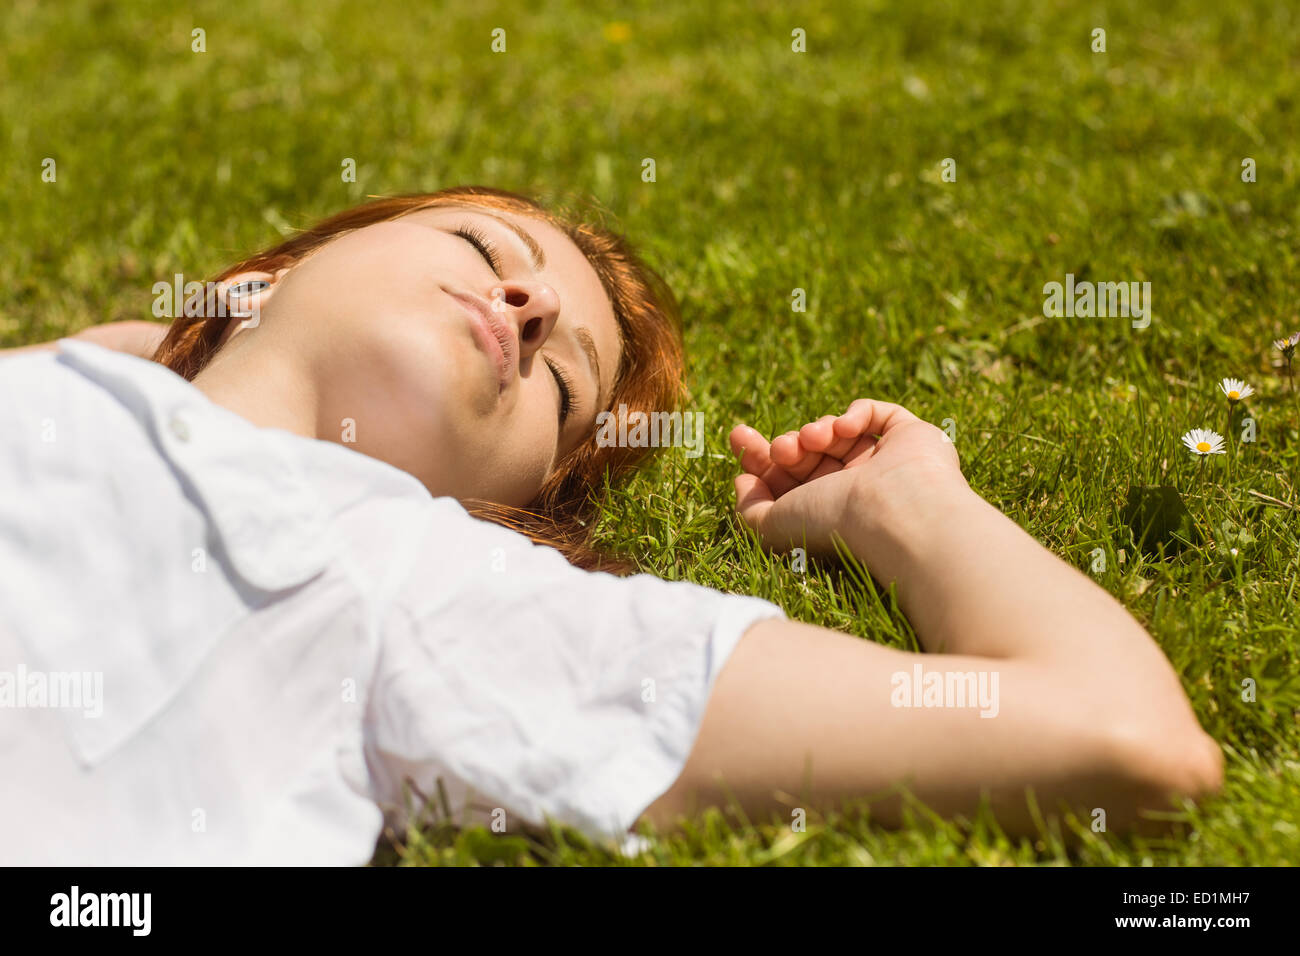 Jolie rousse la sieste sur l'herbe Banque D'Images